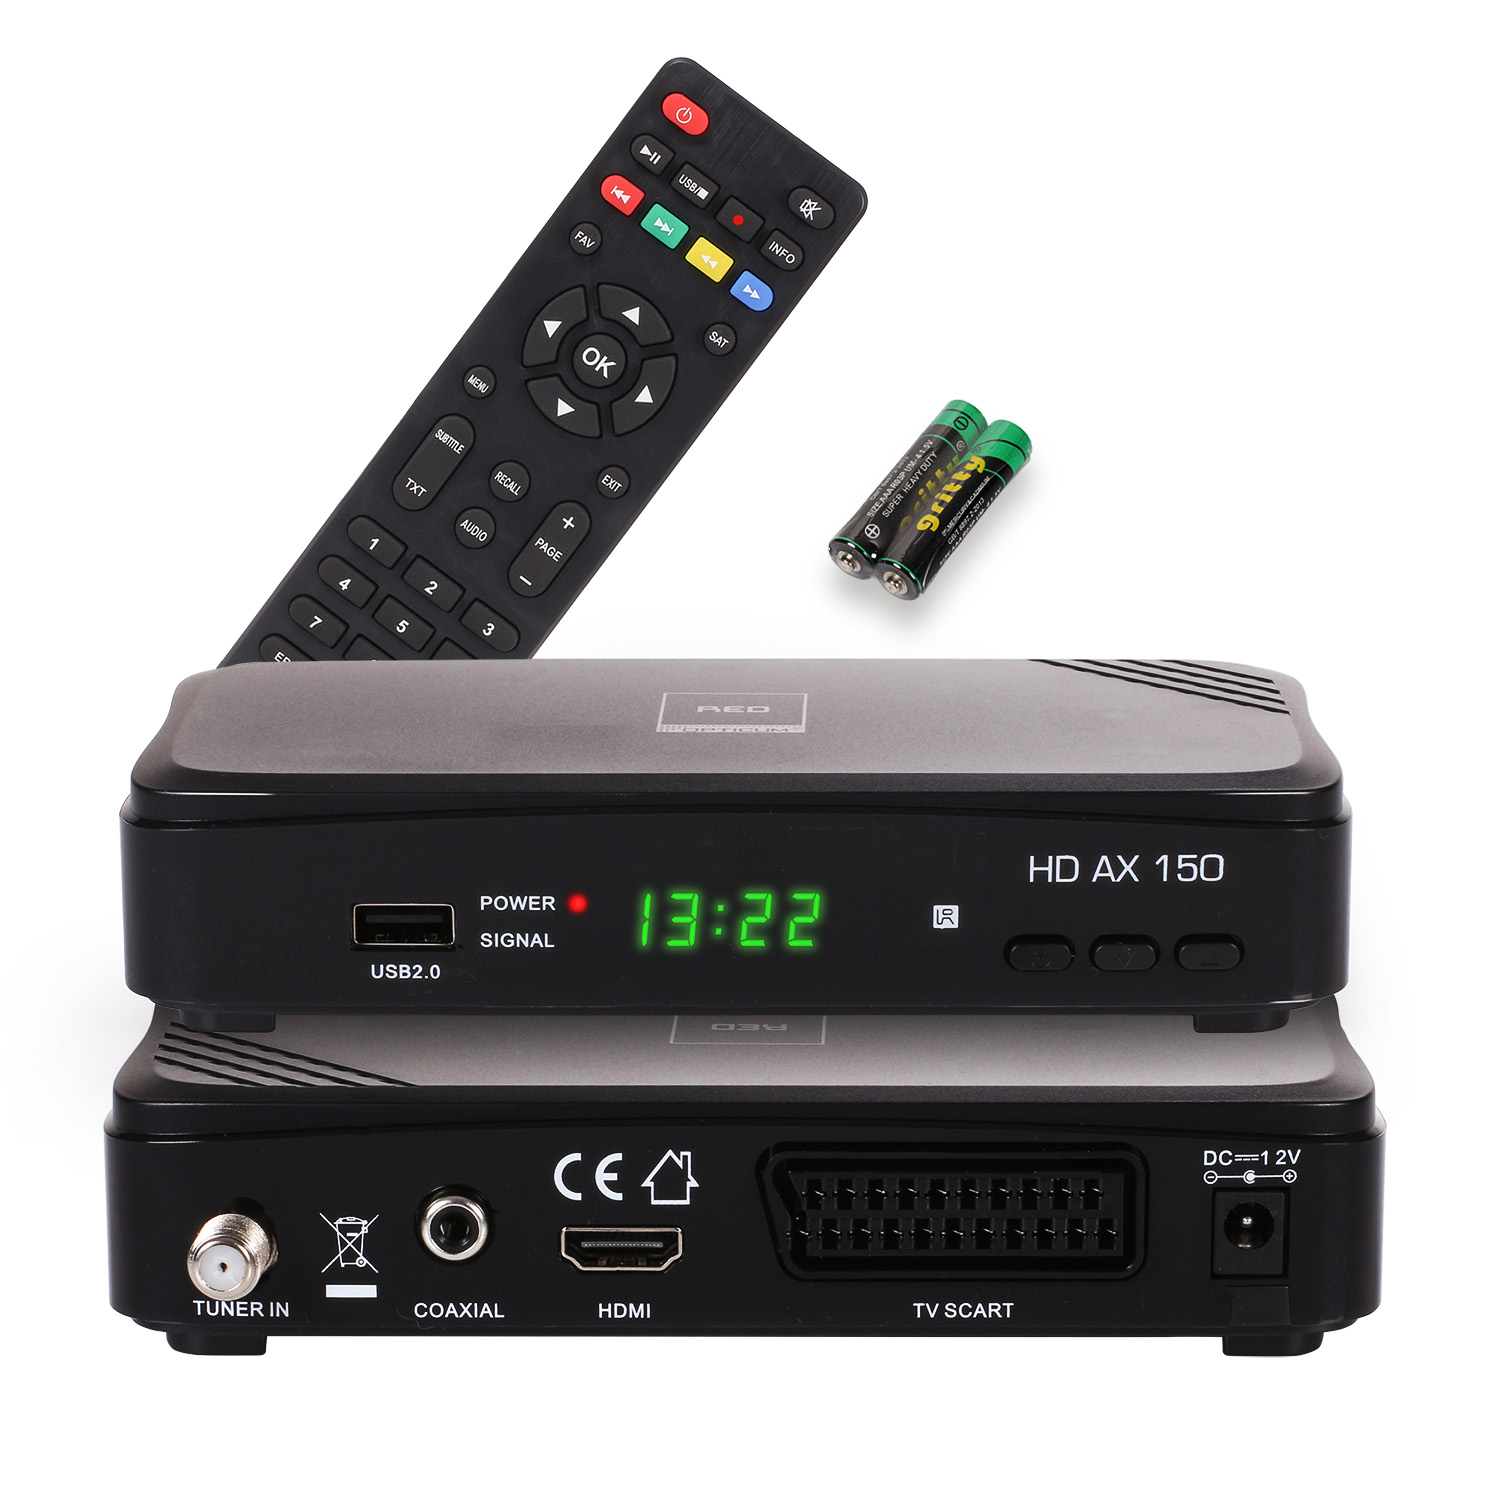 RED OPTICUM Opticum AX PVR-Funktion, schwarz) (HDTV, 150 Sat-Receiver DVB-S, PVR mit DVB-S2